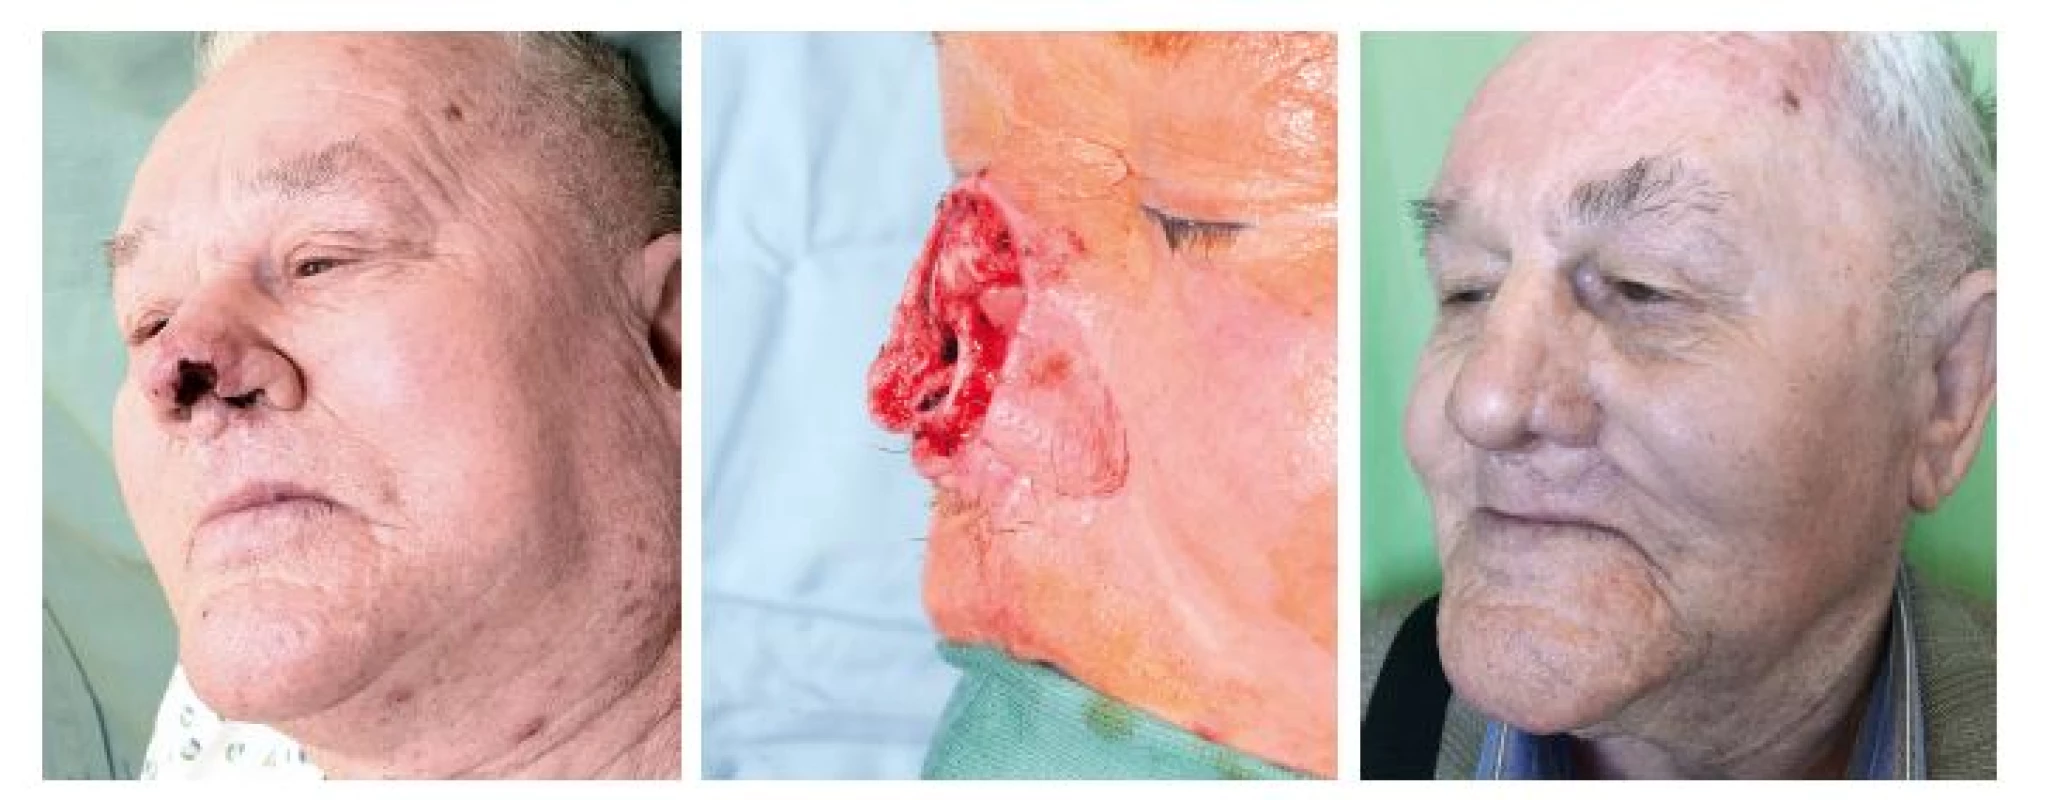 Případ 2 – rozsáhlý kožní nádor špičky a levého nosního křídla: A) stav před operací, B) stav po radikální resekci tumoru, C) stav
po dokončení rekonstrukce nosu.